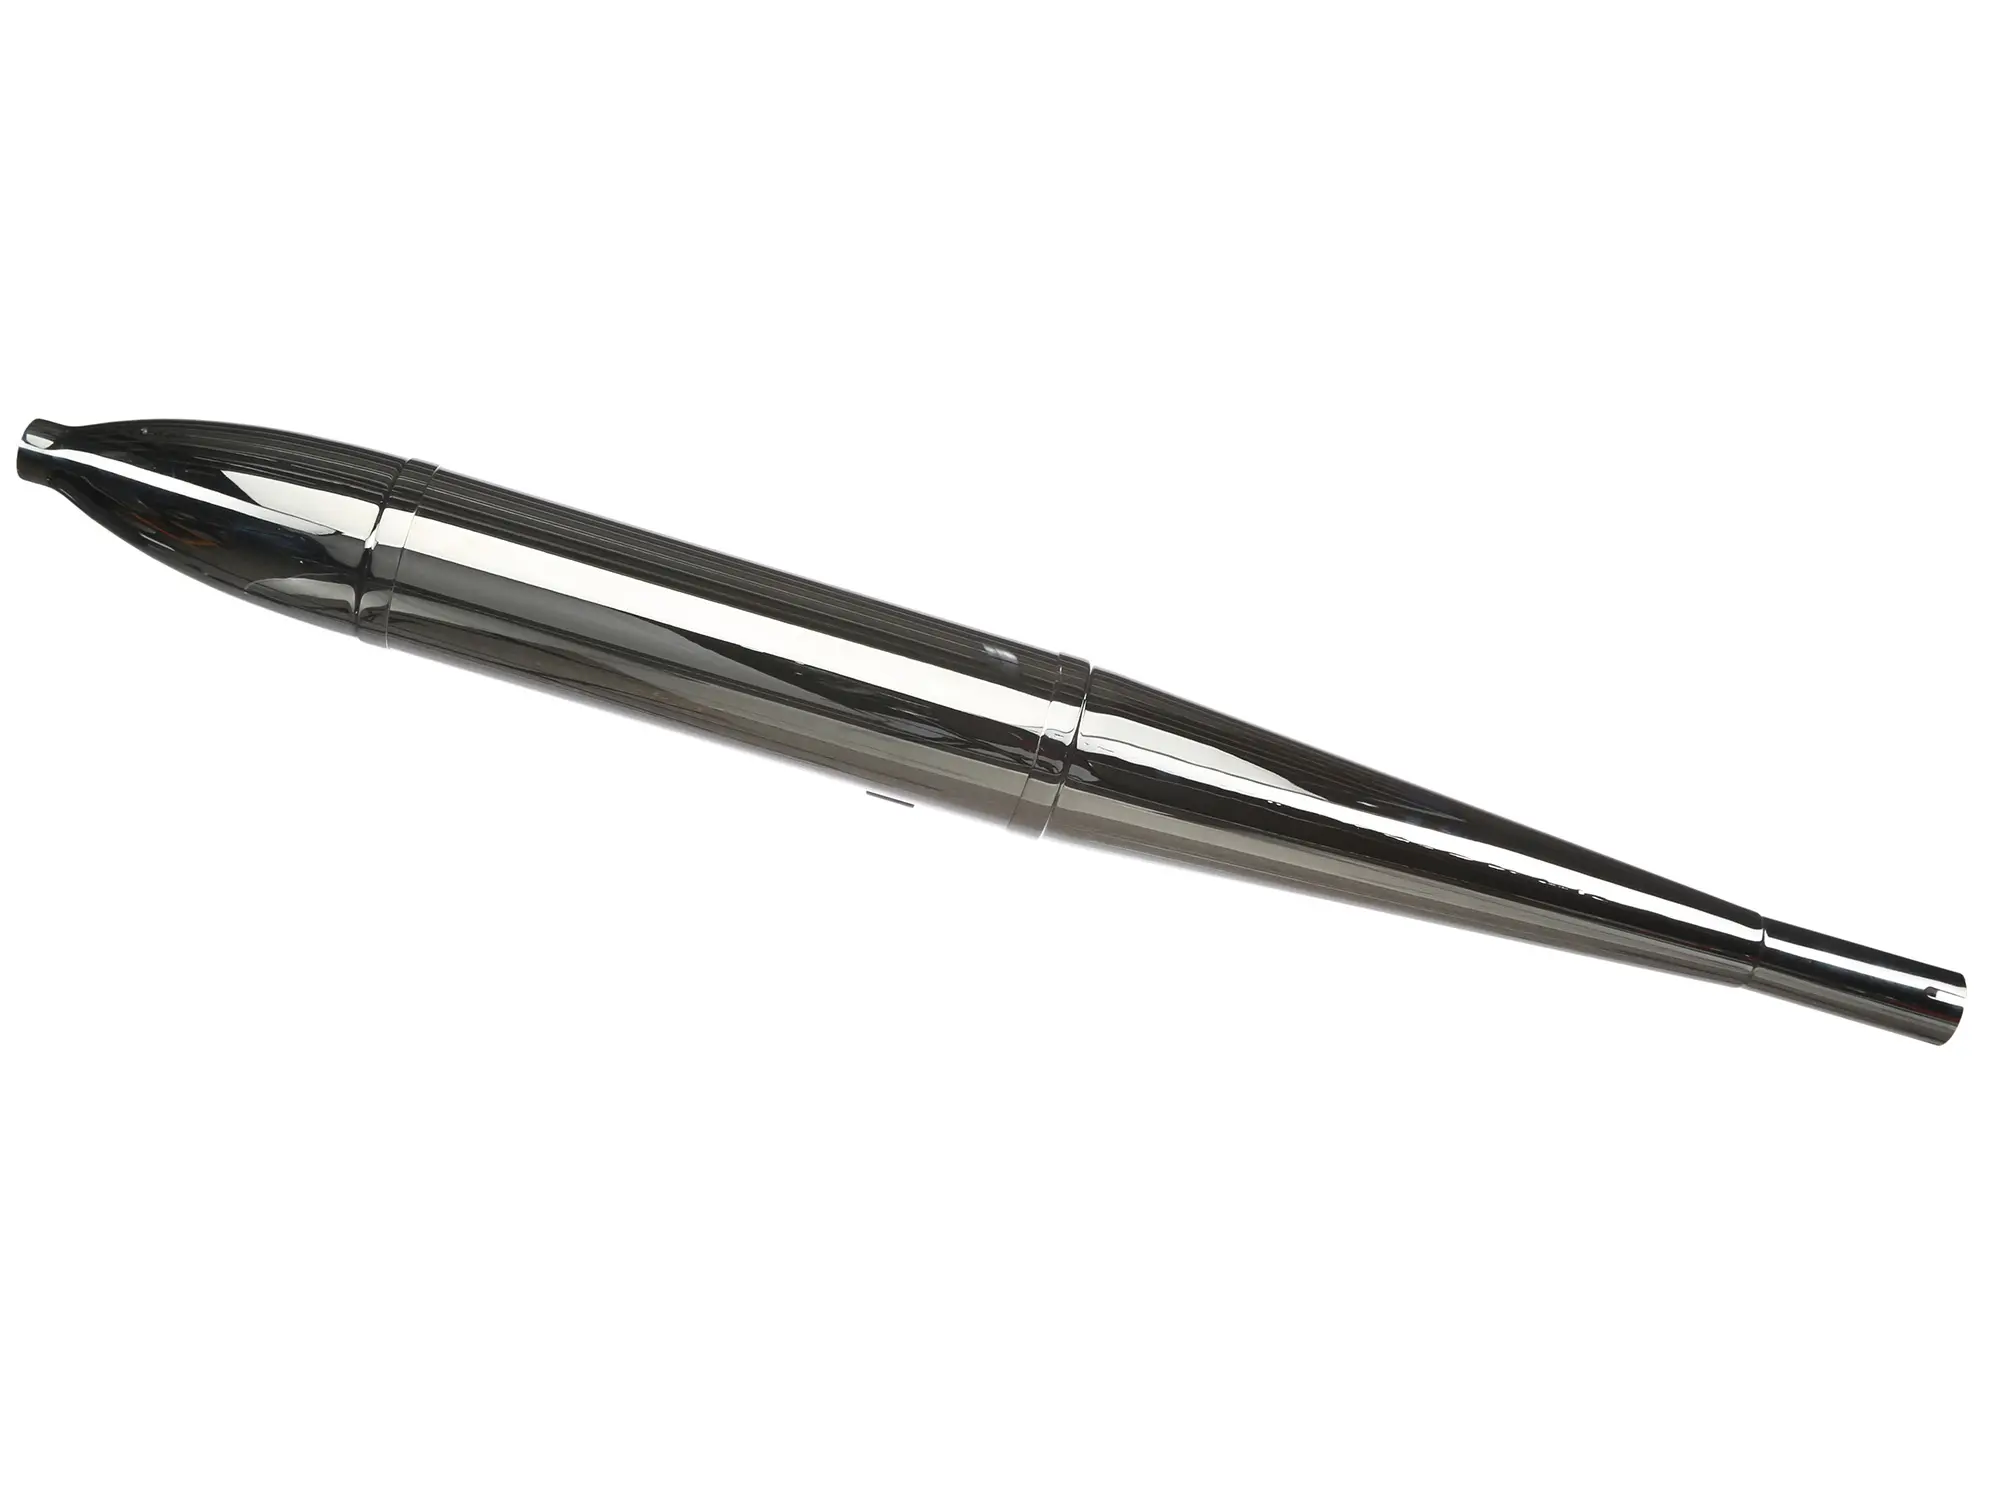 Auspuff Zigarre Ø35mm, 95cm lng, chrom, zerlegbar passend für AWO-Sport, Art.-Nr.: 10056063 - Bild 1